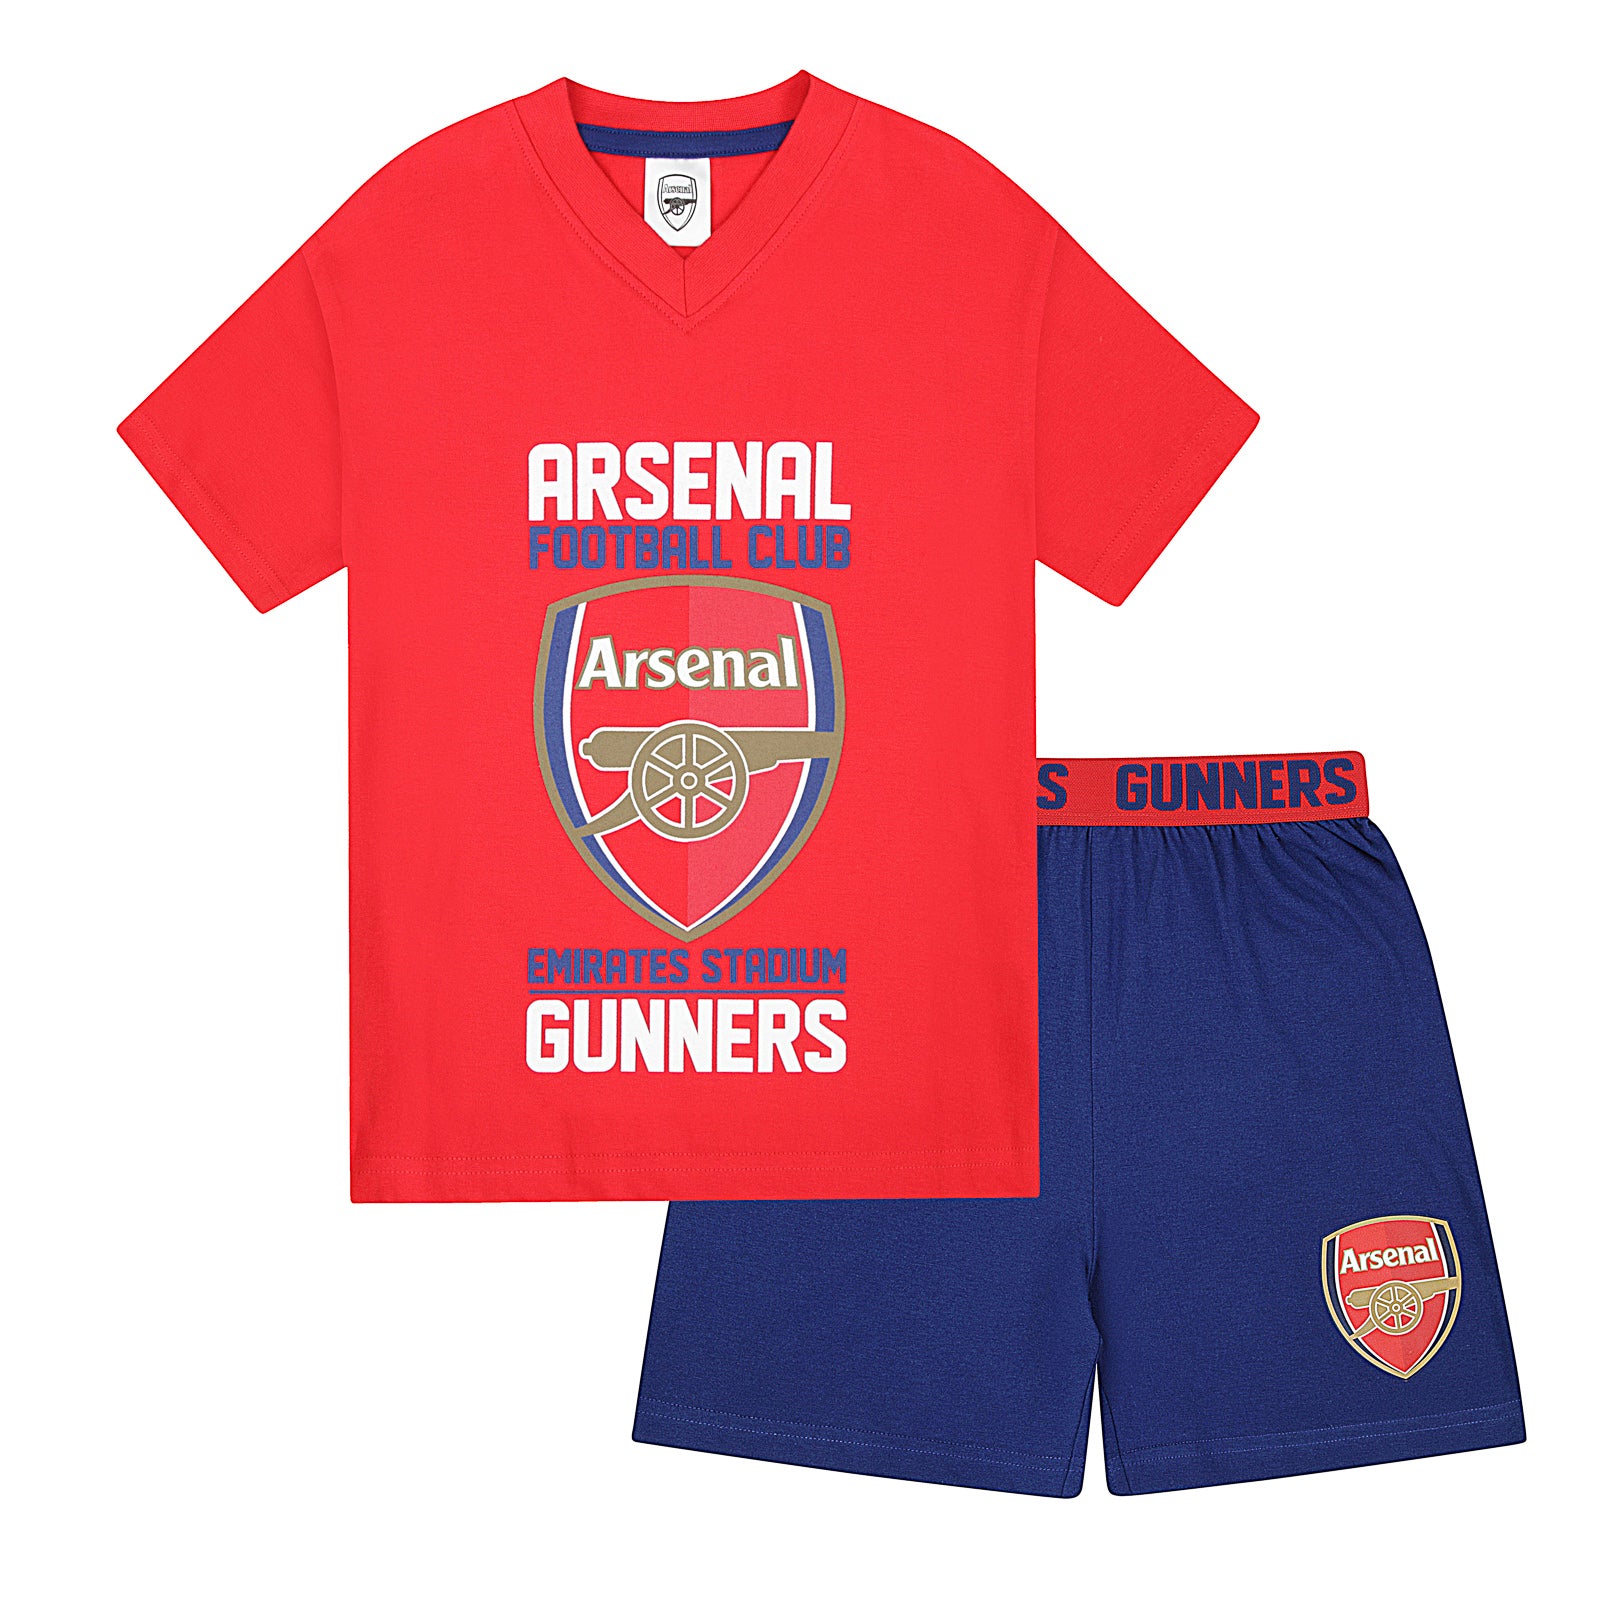 Arsenal FC Boys Pyjamas